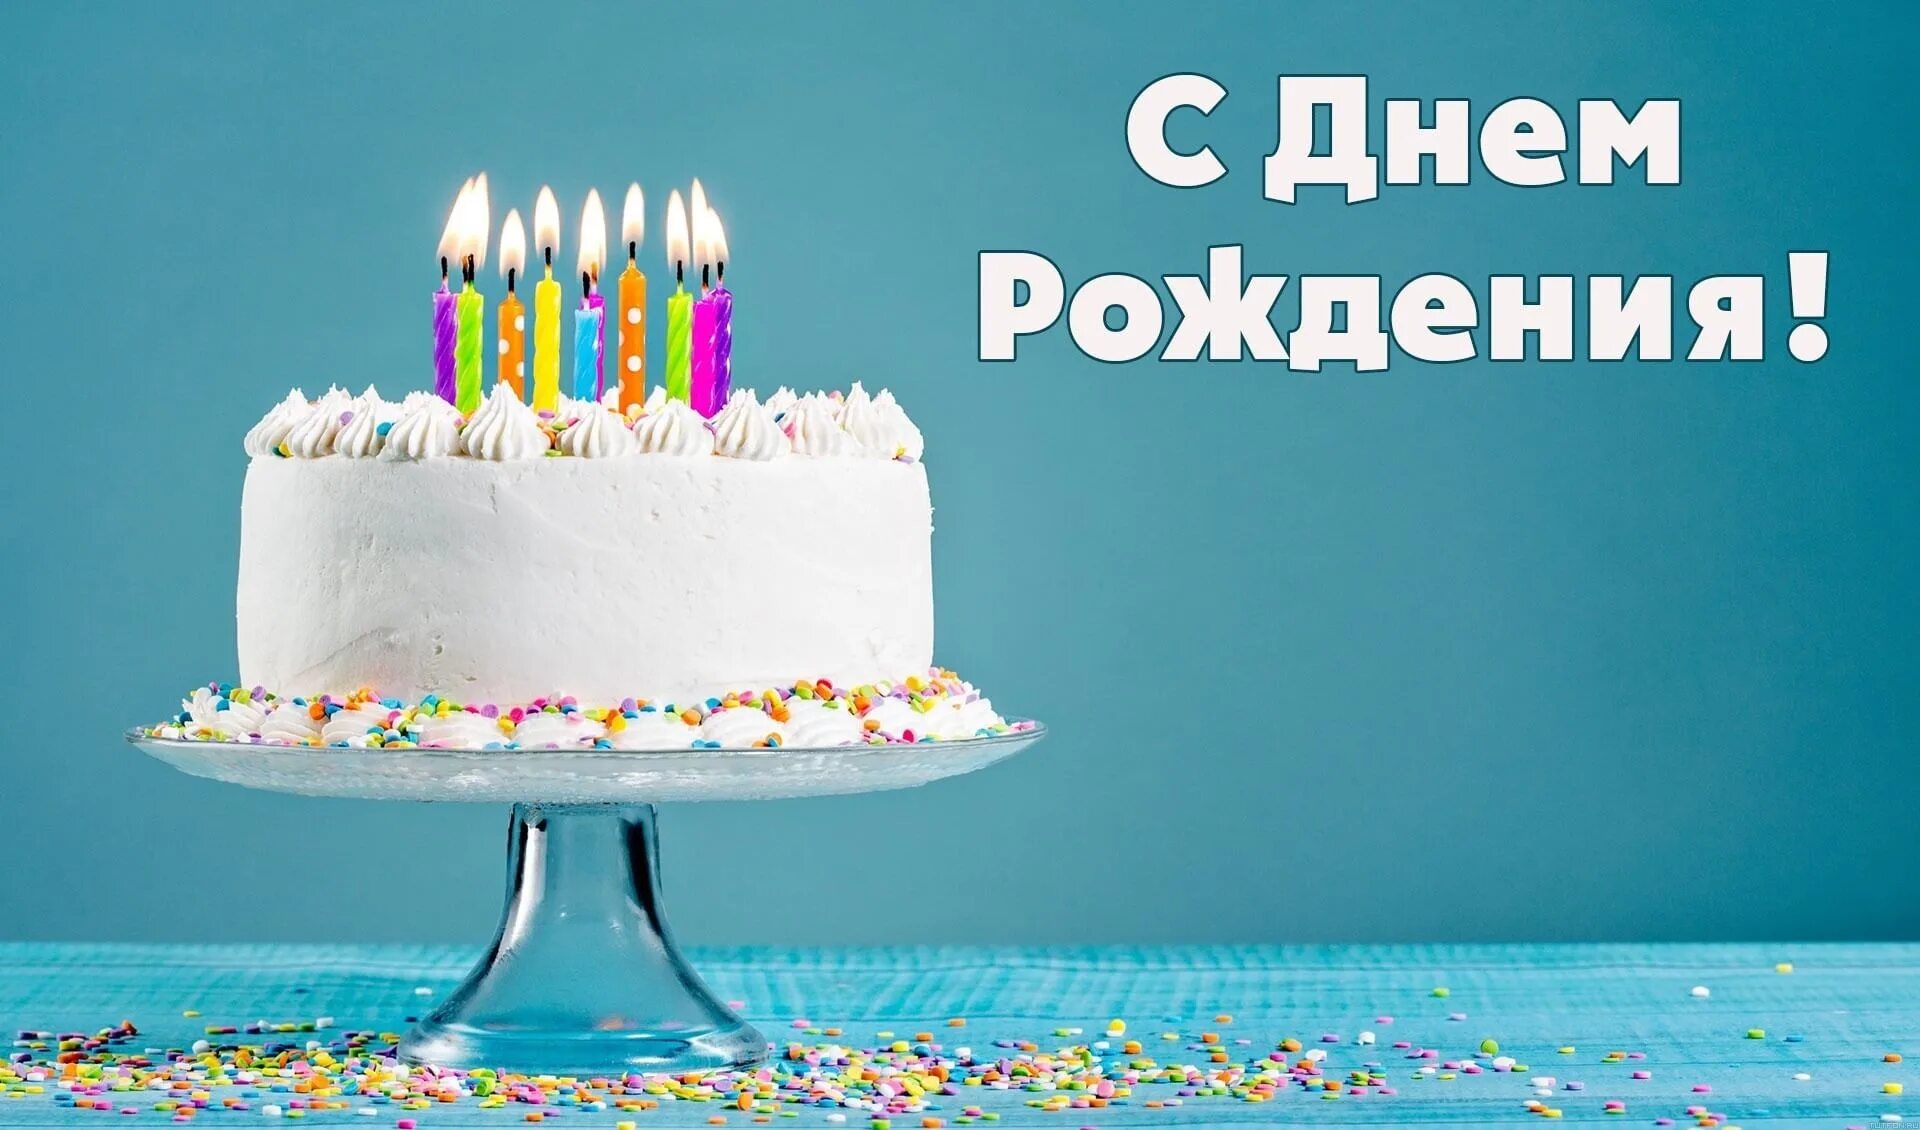 Поздравить форум с днем рождения. С днем рождения. Открытка с днём рождения торт. Поздравления с днём рождения торт. Открытка с днём рождения торт со свечами.